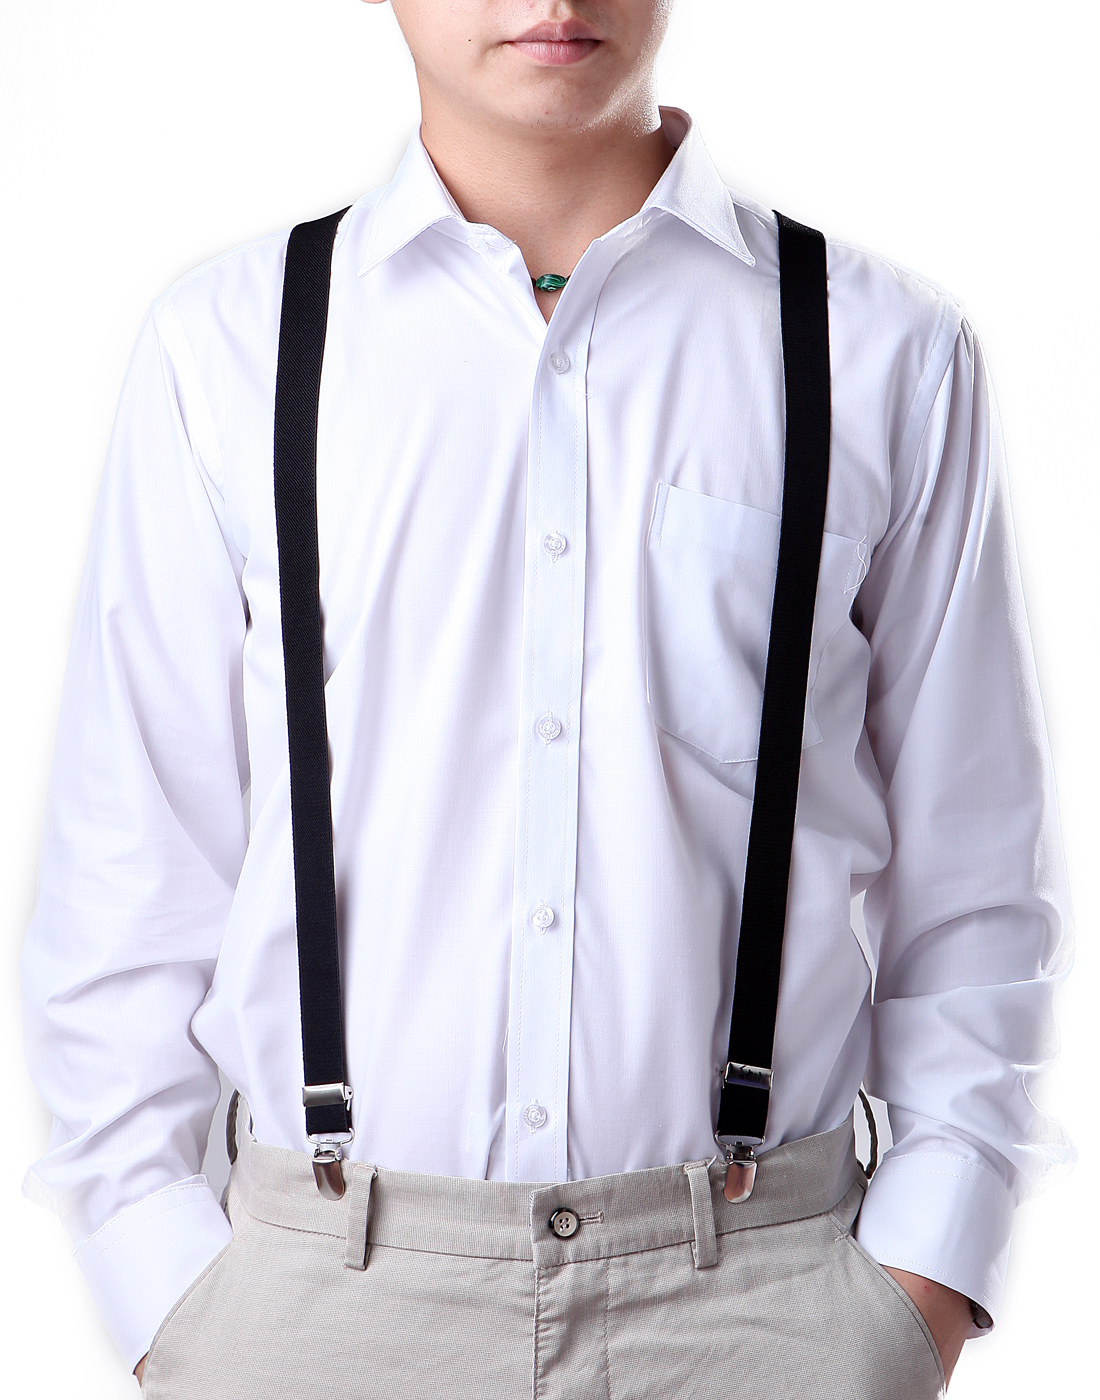 HDE Mens Elastic Y-Back Clip Suspenders - 1 Inch Algeria